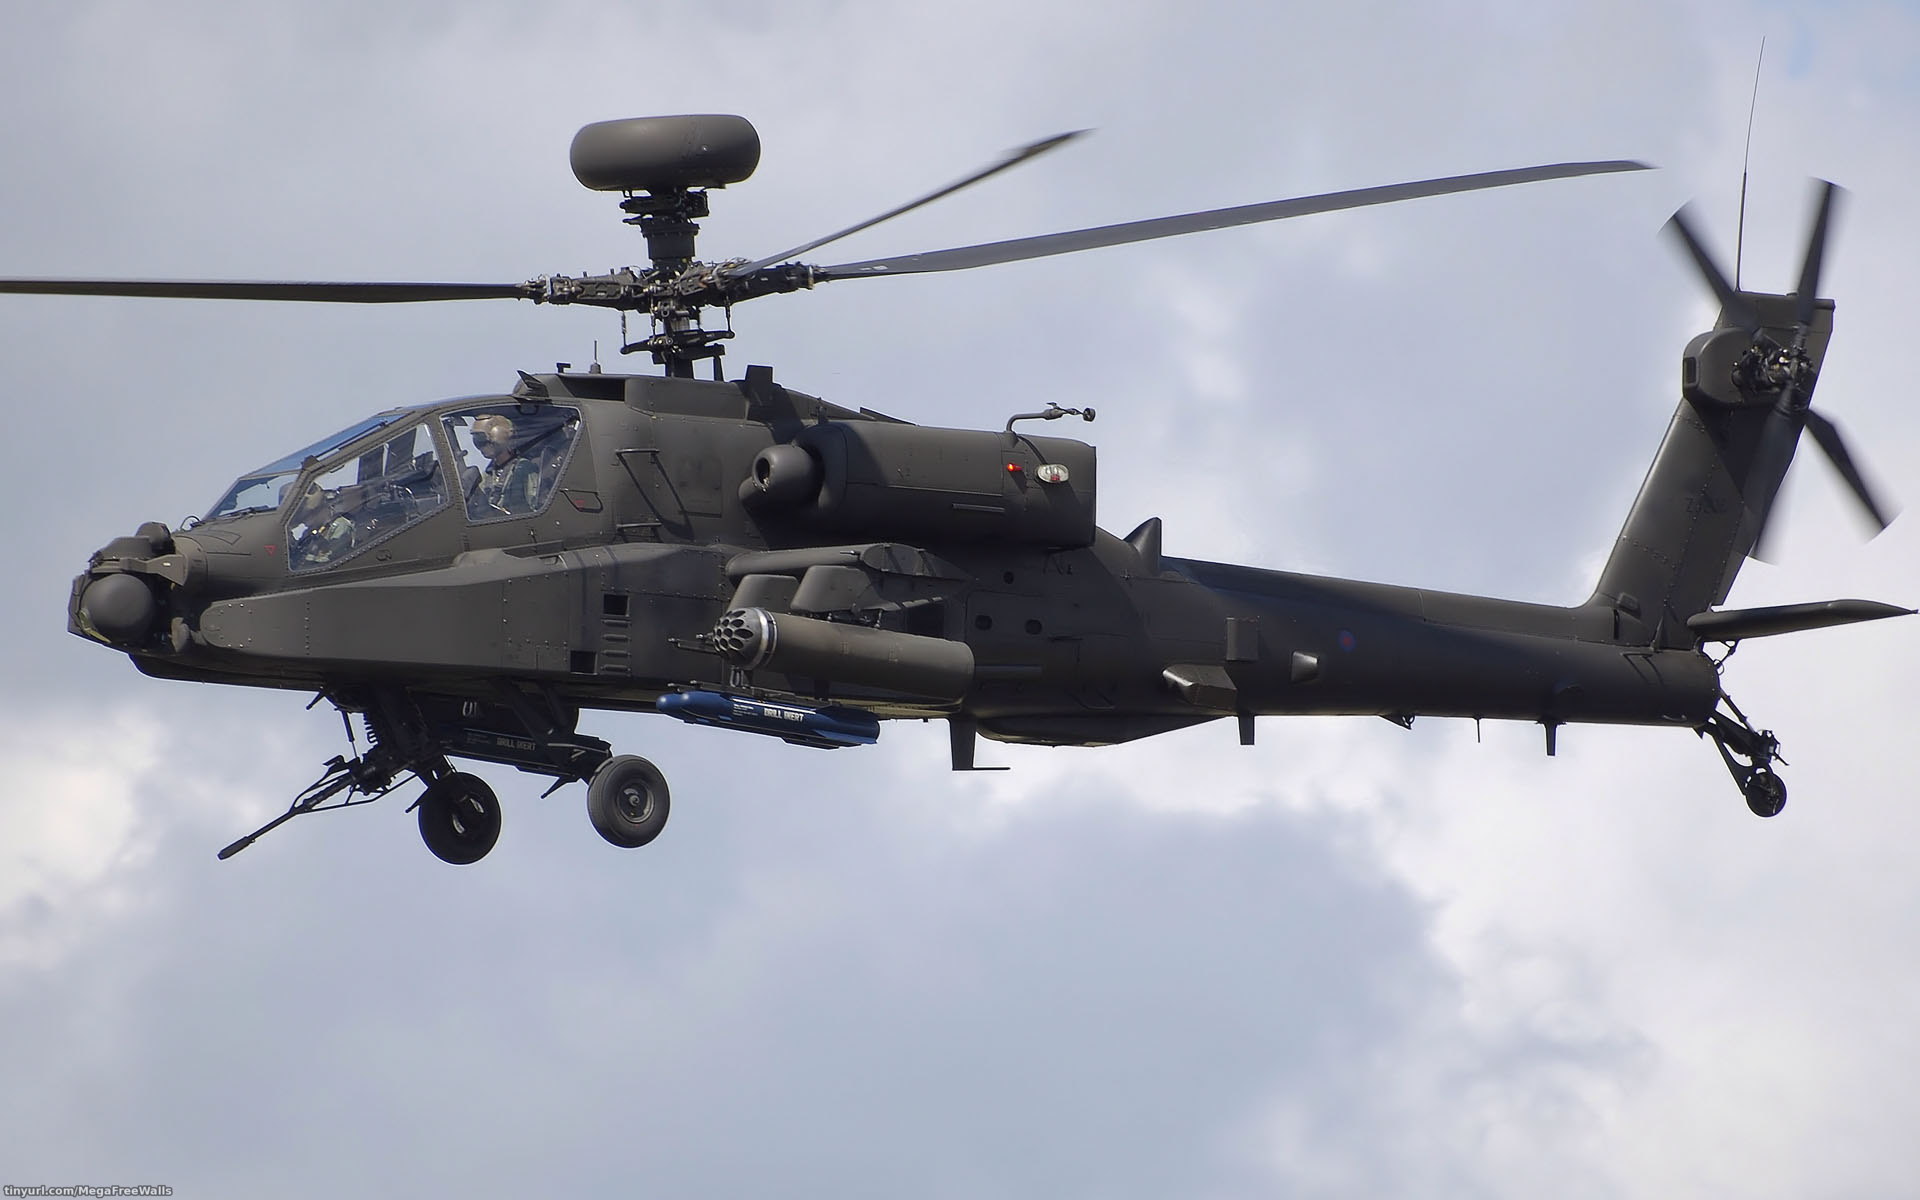 Descarga gratuita de fondo de pantalla para móvil de Helicóptero, Militar, Vehículo, Agusta Westland.